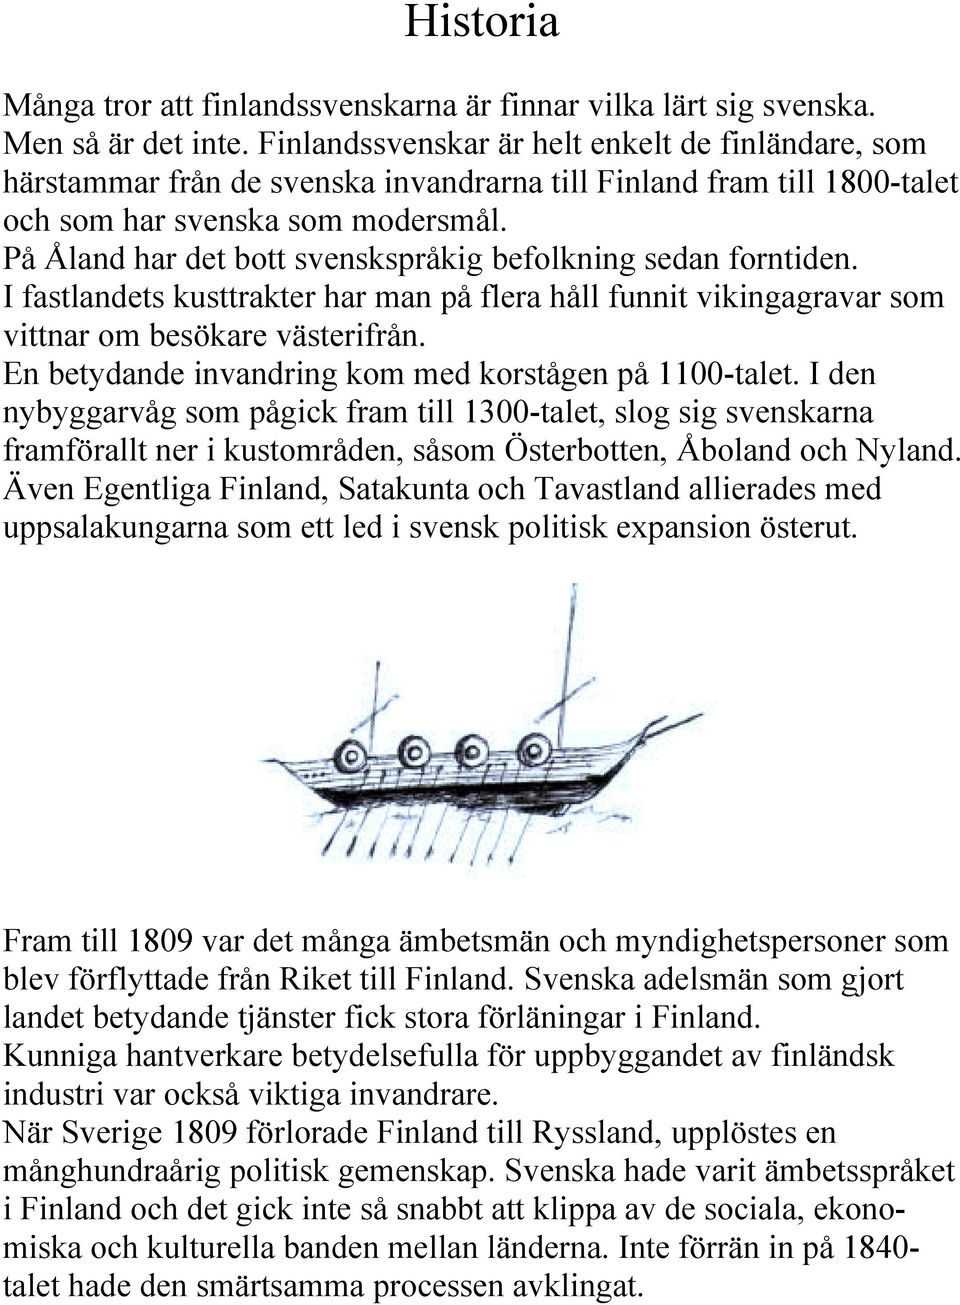 På Åland har det bott svenskspråkig befolkning sedan forntiden. I fastlandets kusttrakter har man på flera håll funnit vikingagravar som vittnar om besökare västerifrån.